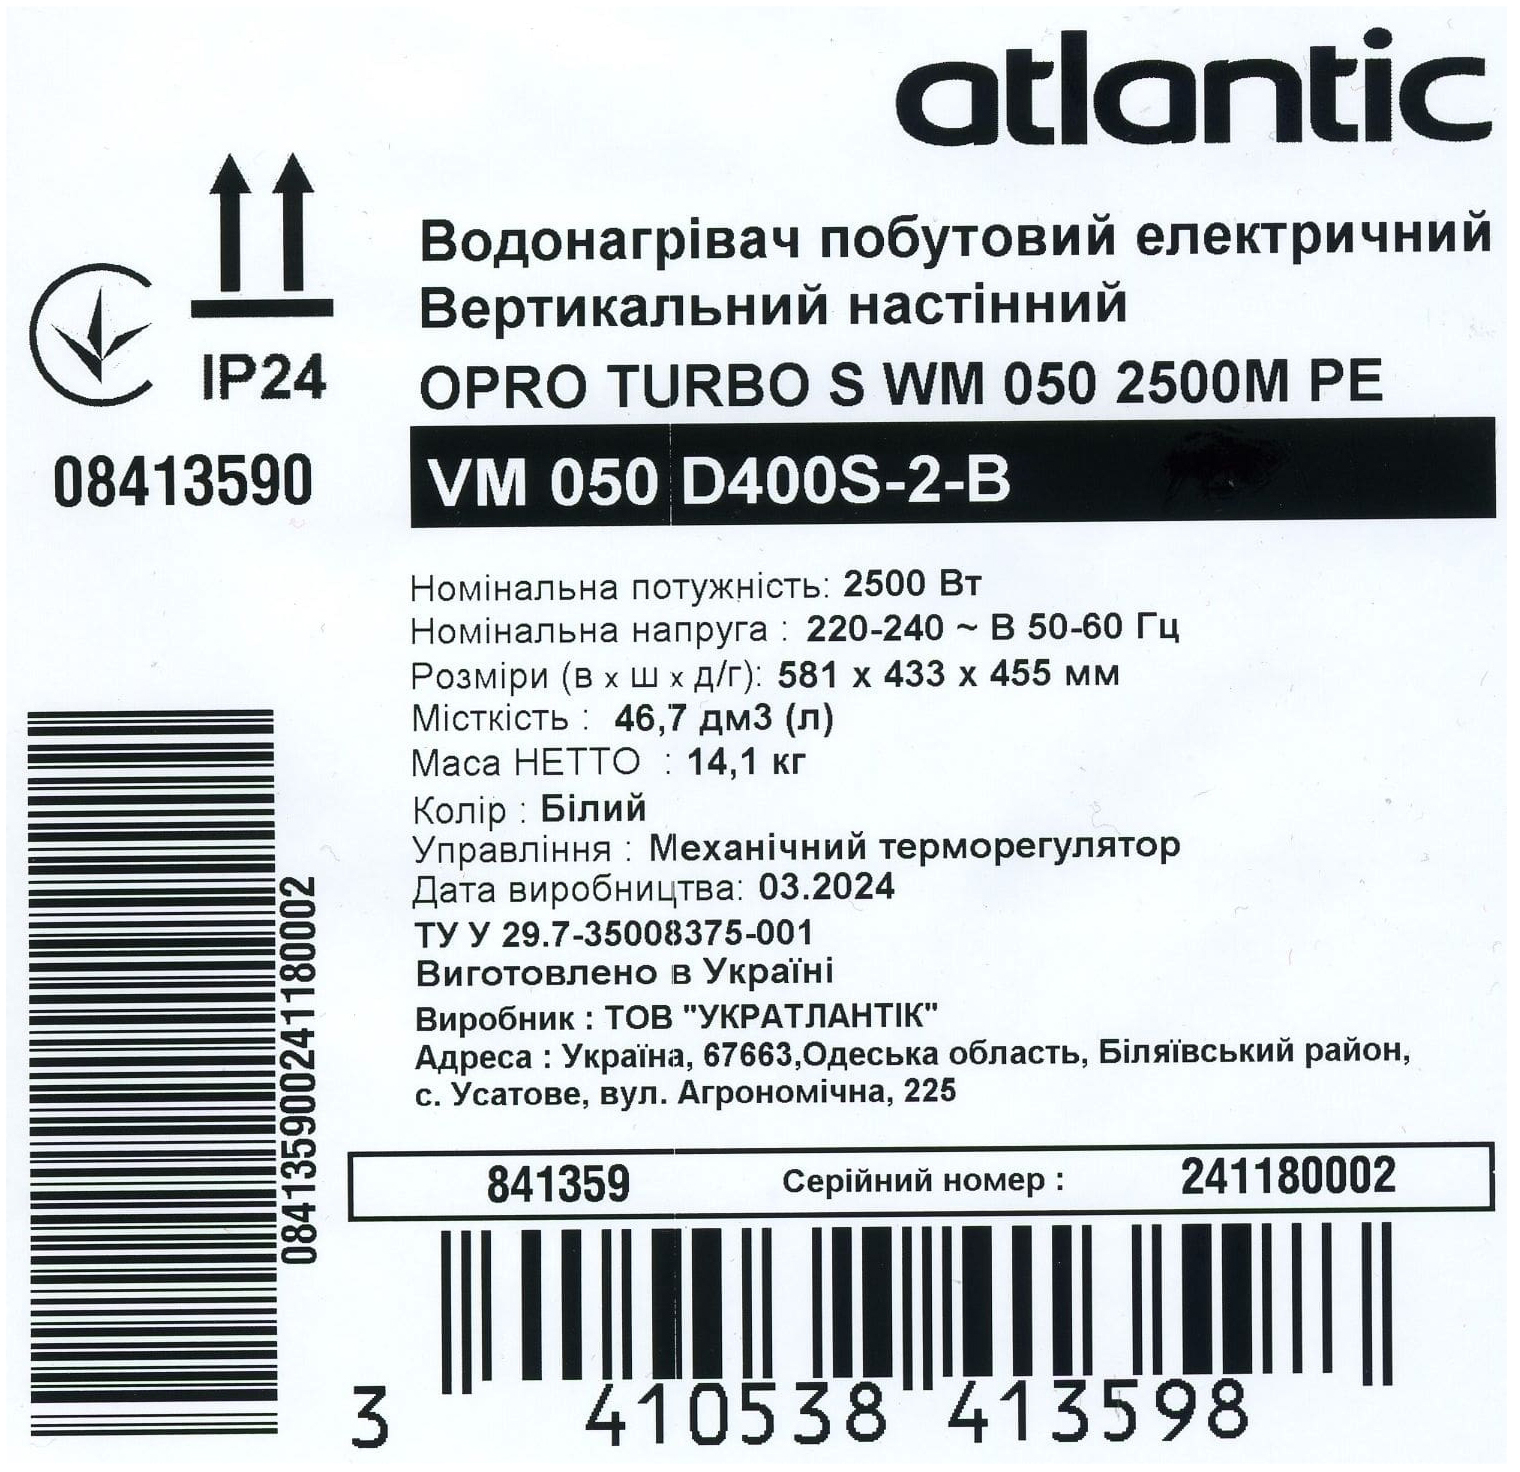 Atlantic Opro Turbo VM 050 D400S-2-B (2500W) в магазині в Києві - фото 10